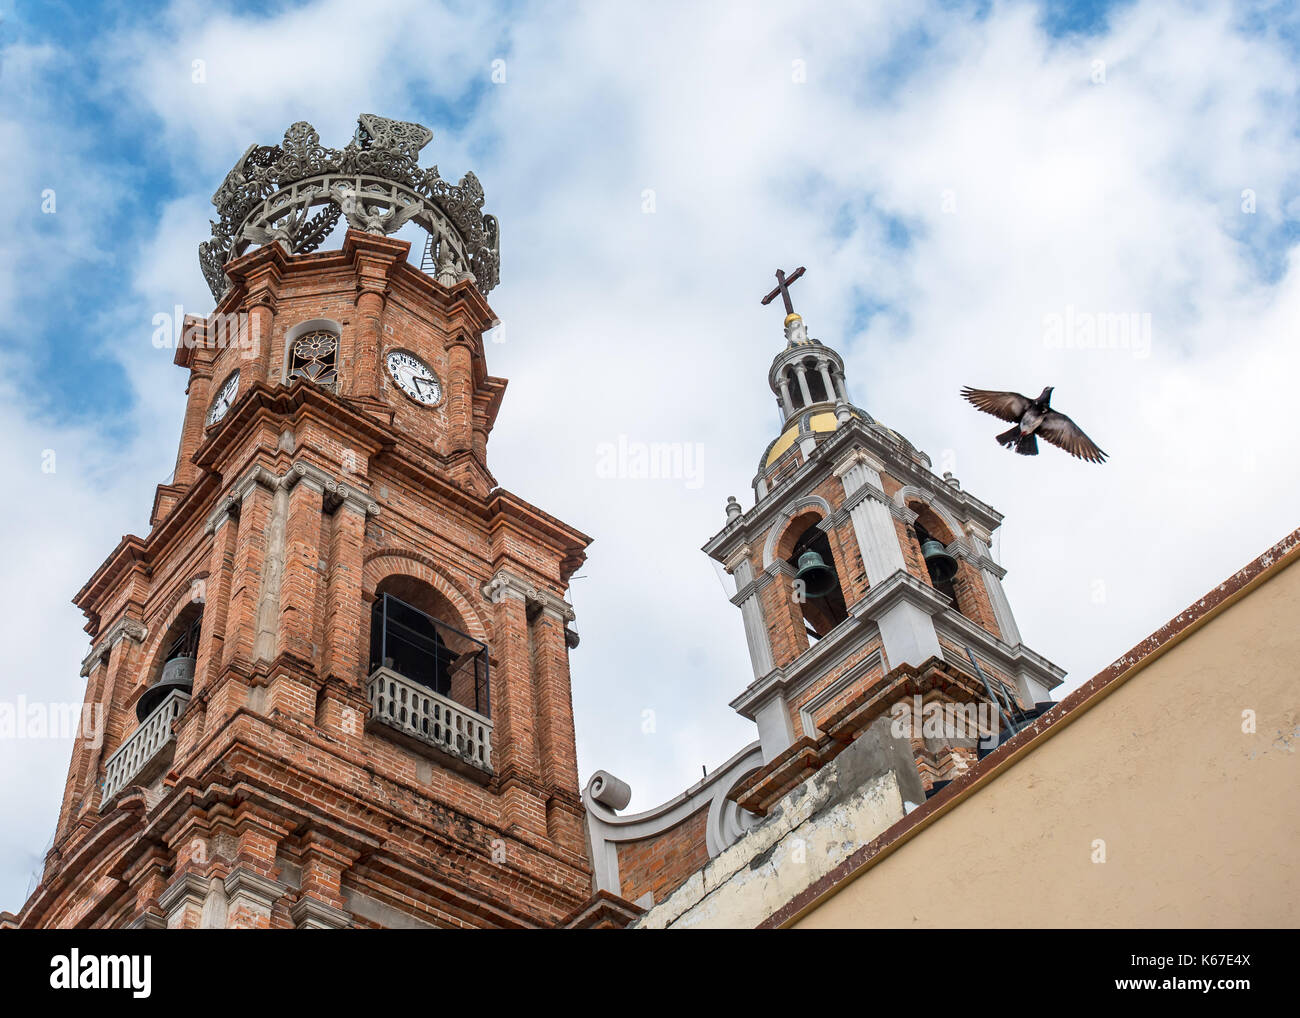 Campanarios de Nuestra Señora de Guadalupe catedral / iglesia en Puerto Vallarta del casco antiguo de la ciudad como un pájaro vuela contra el cielo como si simbolizando la paz o esperanza Foto de stock